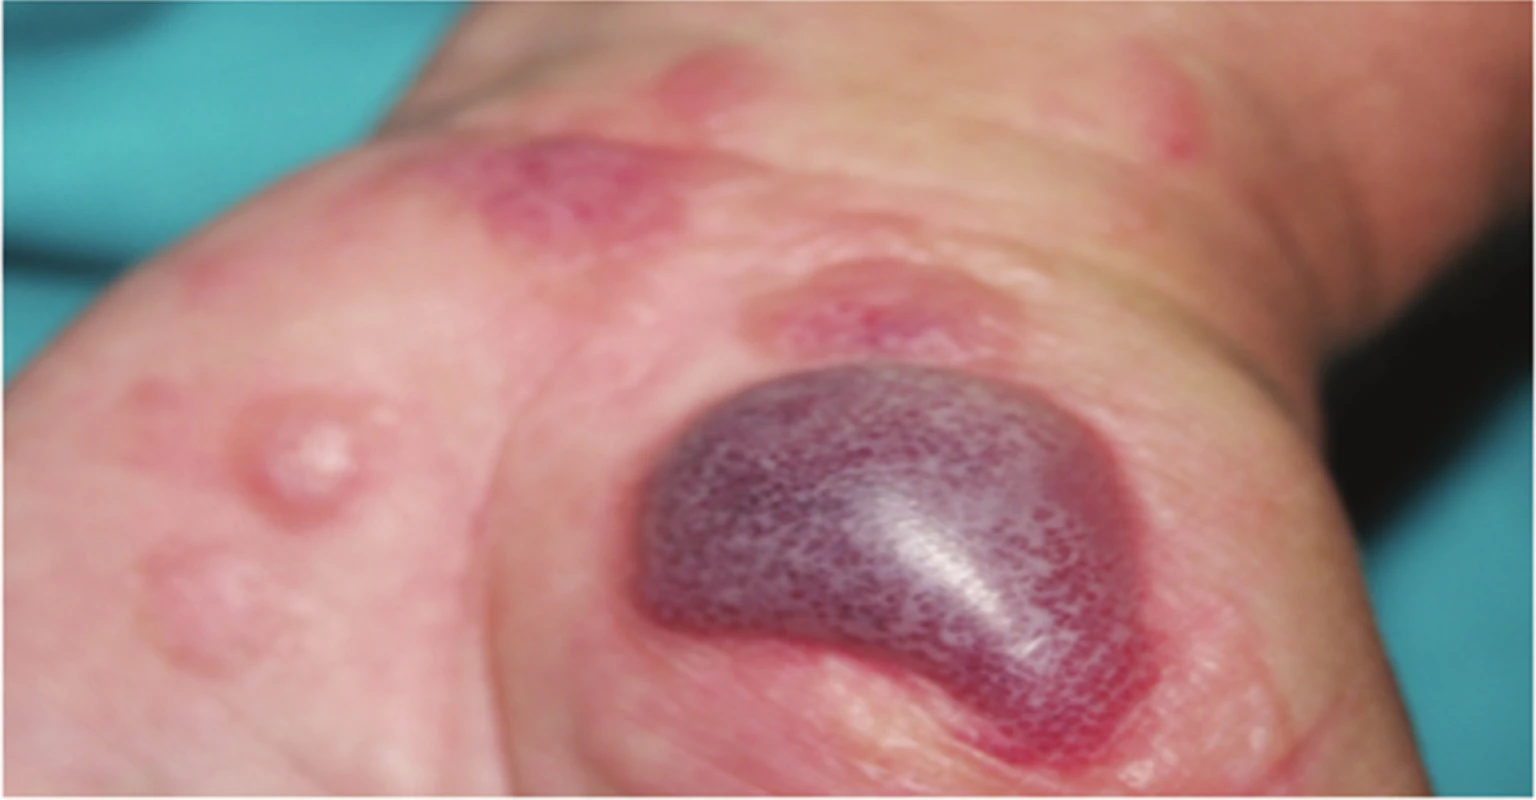 Akutní iritační kontaktní dermatitida s hemoragickými bulami po opakovaném umytí rukou 
v pracím prášku Colon